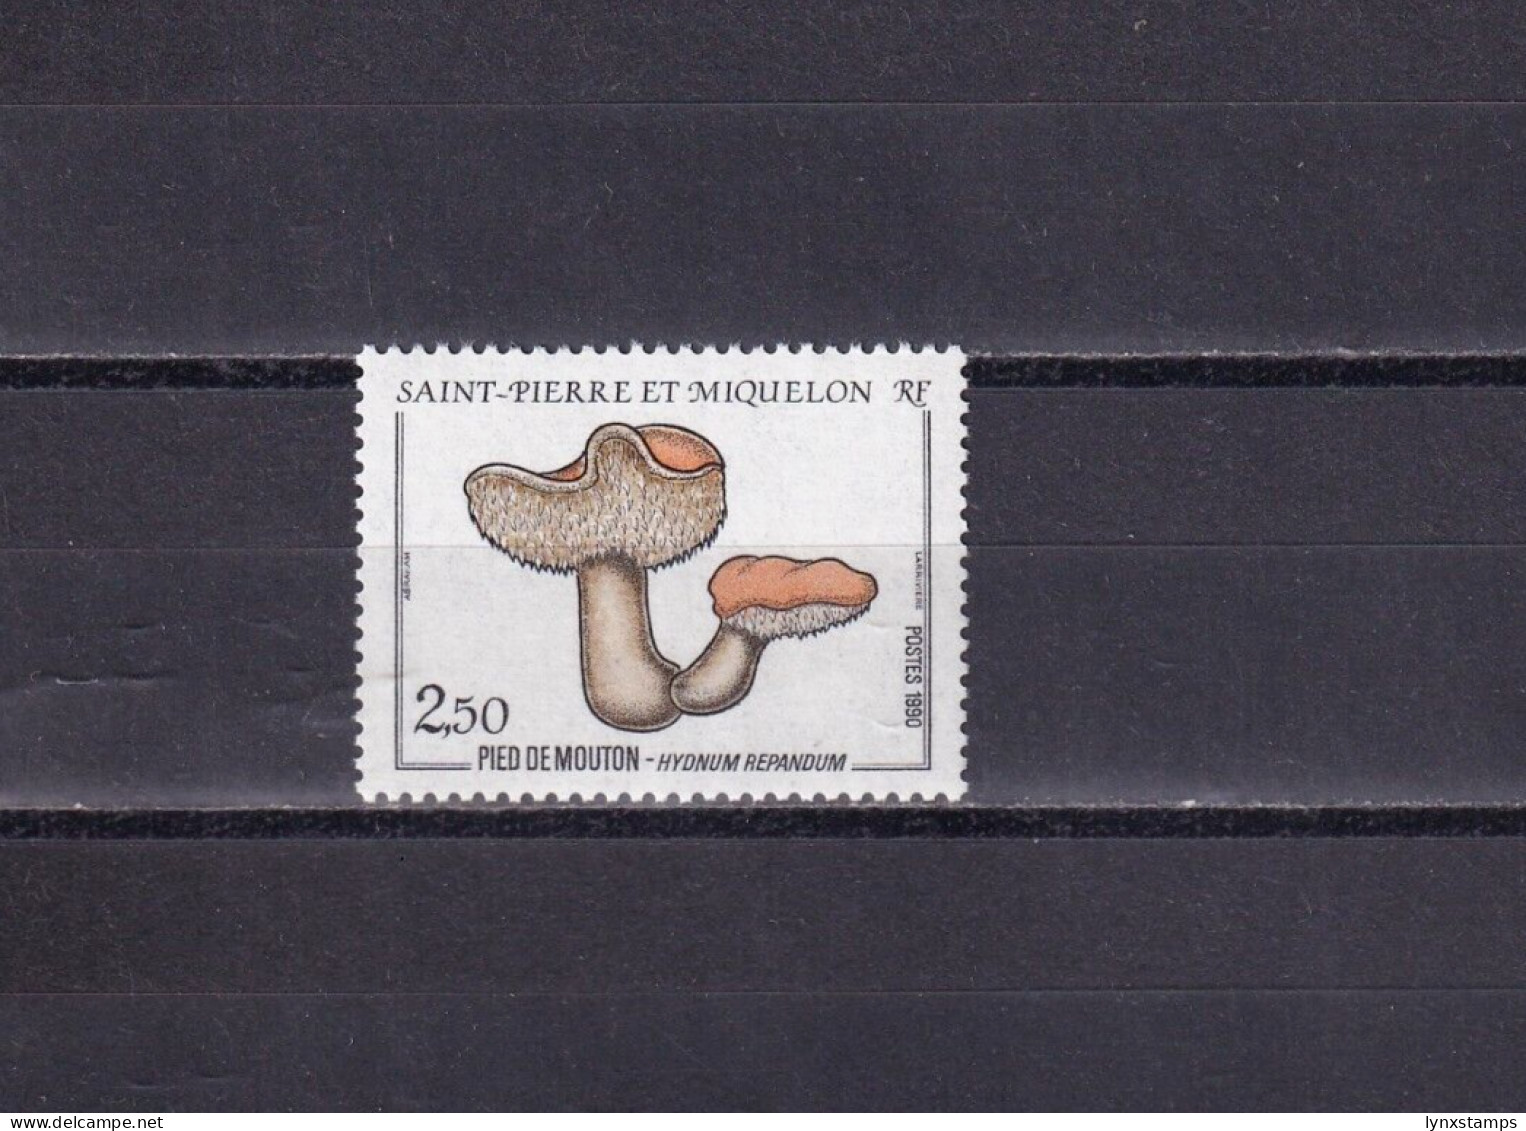 SA03 St Pierre Et Miquelon France 1990 Mushrooms Mint Stamp - Unused Stamps